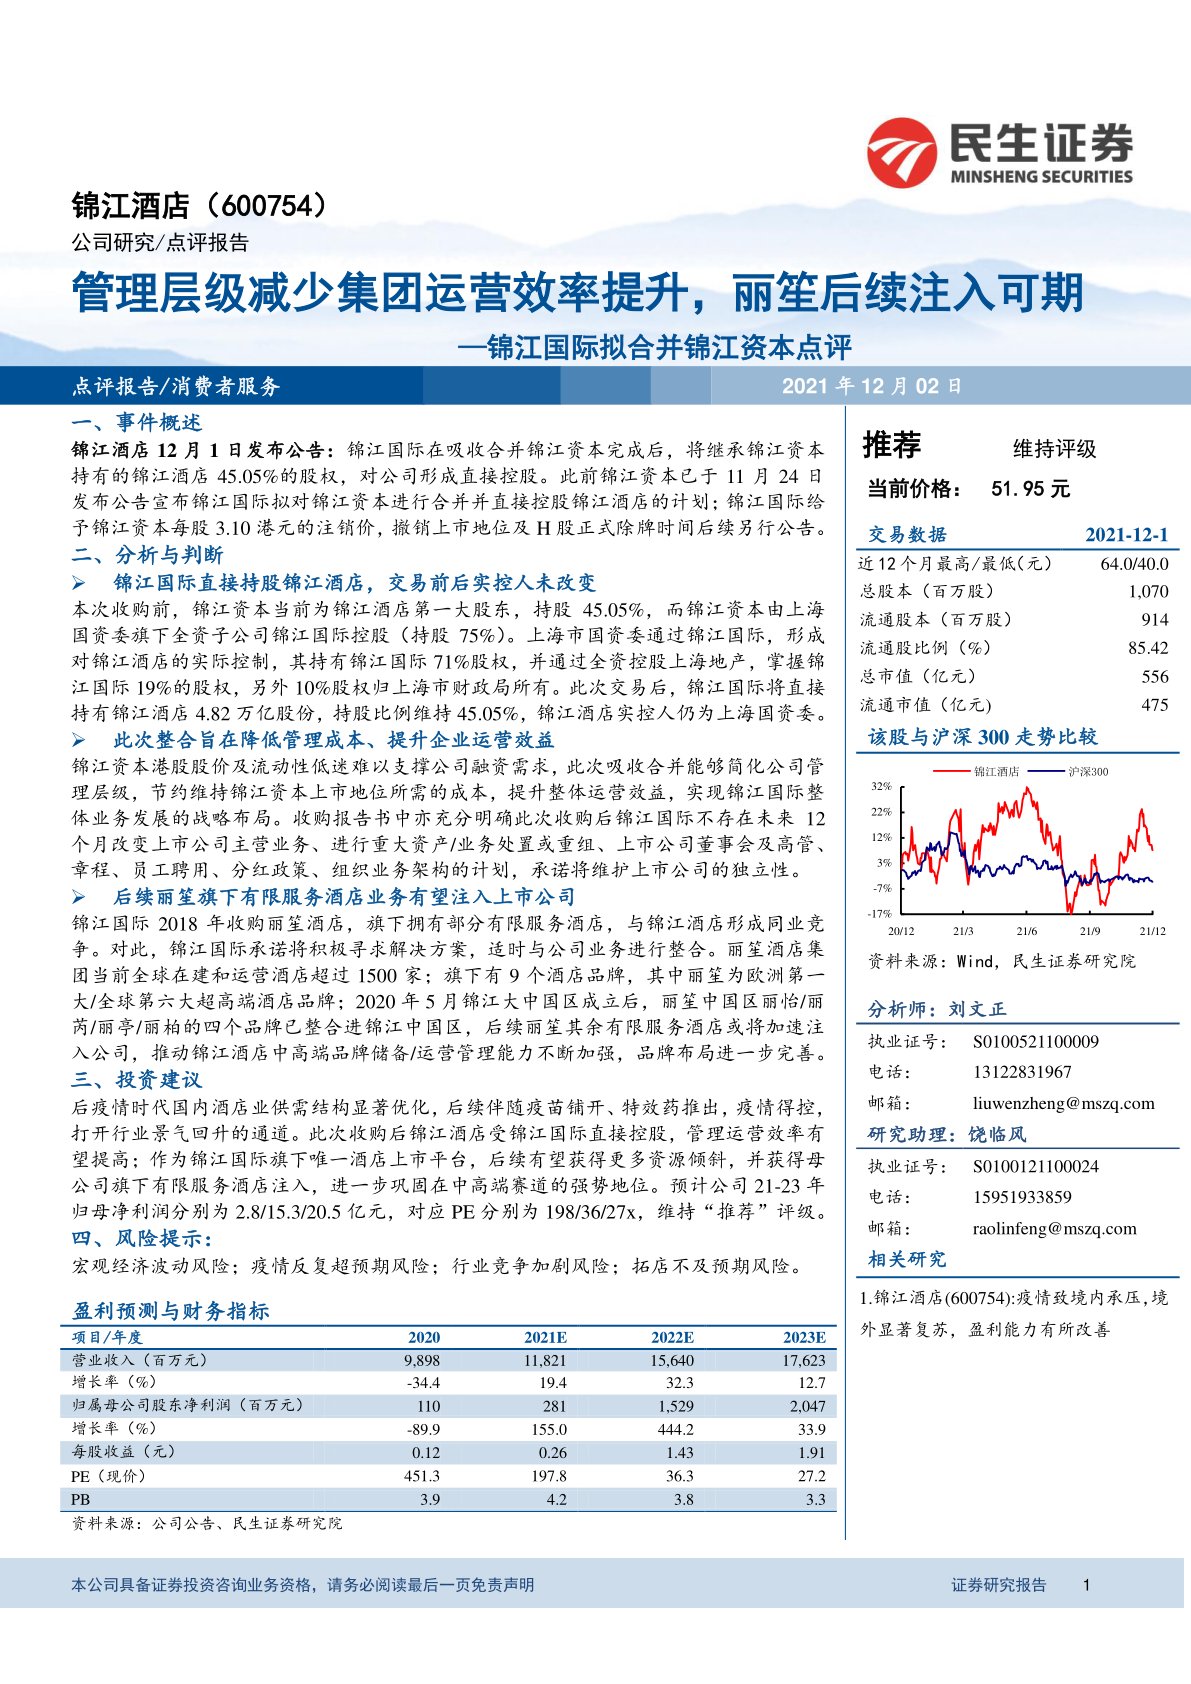 锦江国际拟合并锦江资本点评：管理层级减少集团运营效率提升，丽笙后续注入可期